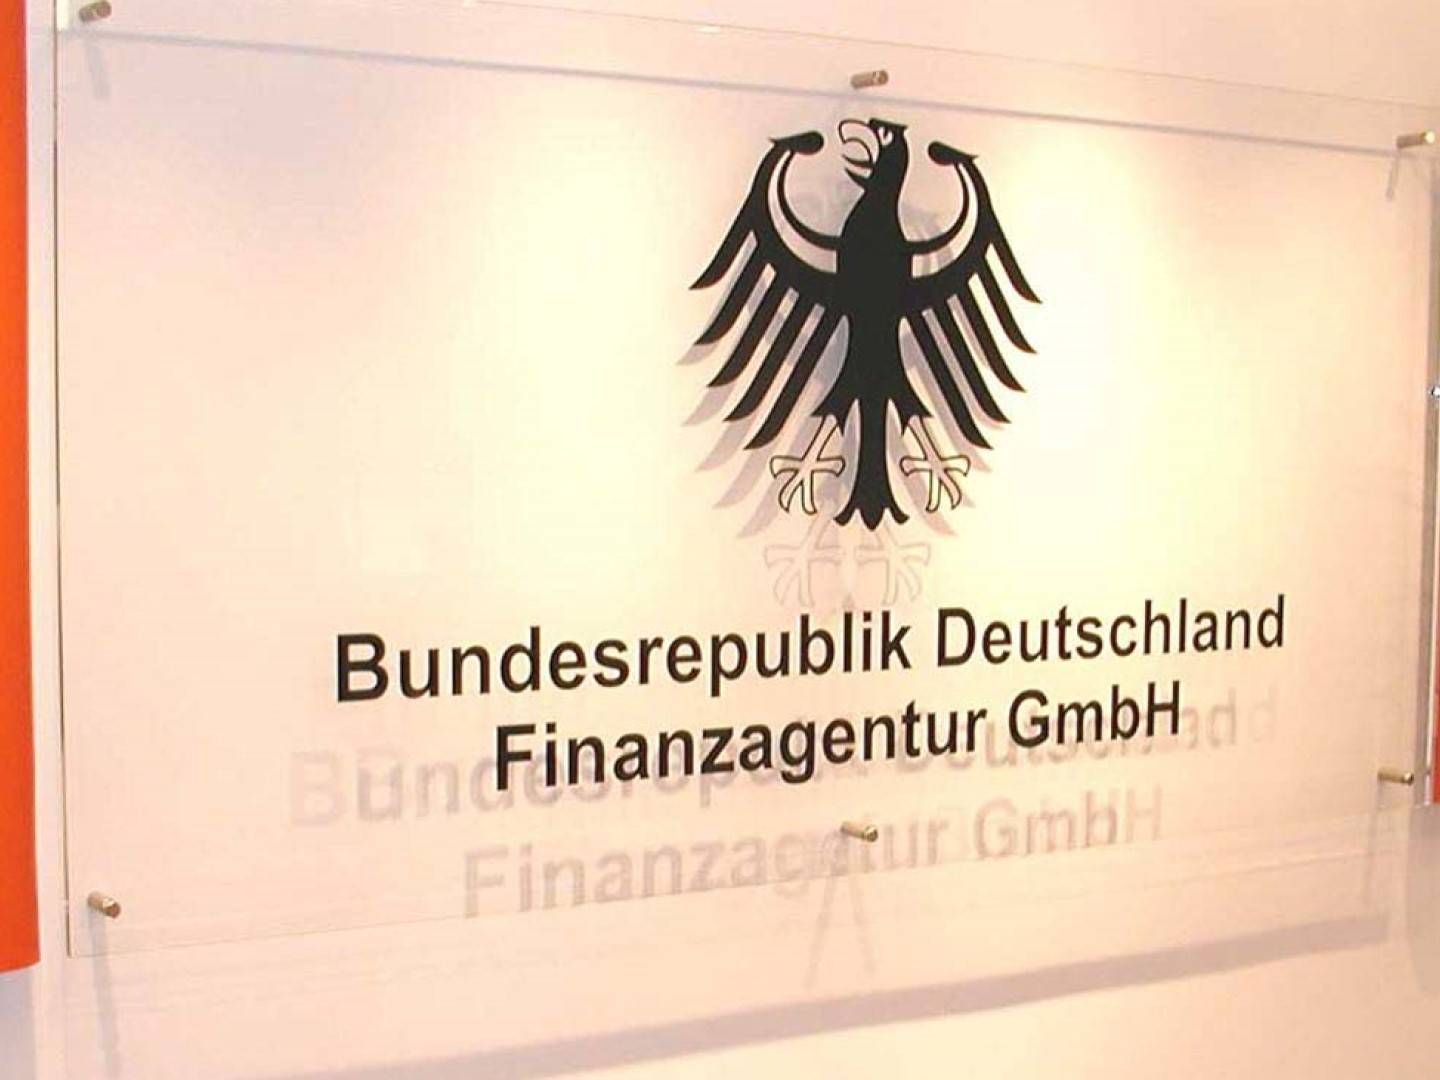 Aufhellung bei der Bad Bank FMS, die der Finanzagentur unterstellt ist. | Foto: Bundesrepublik Deutschland Finanzagentur